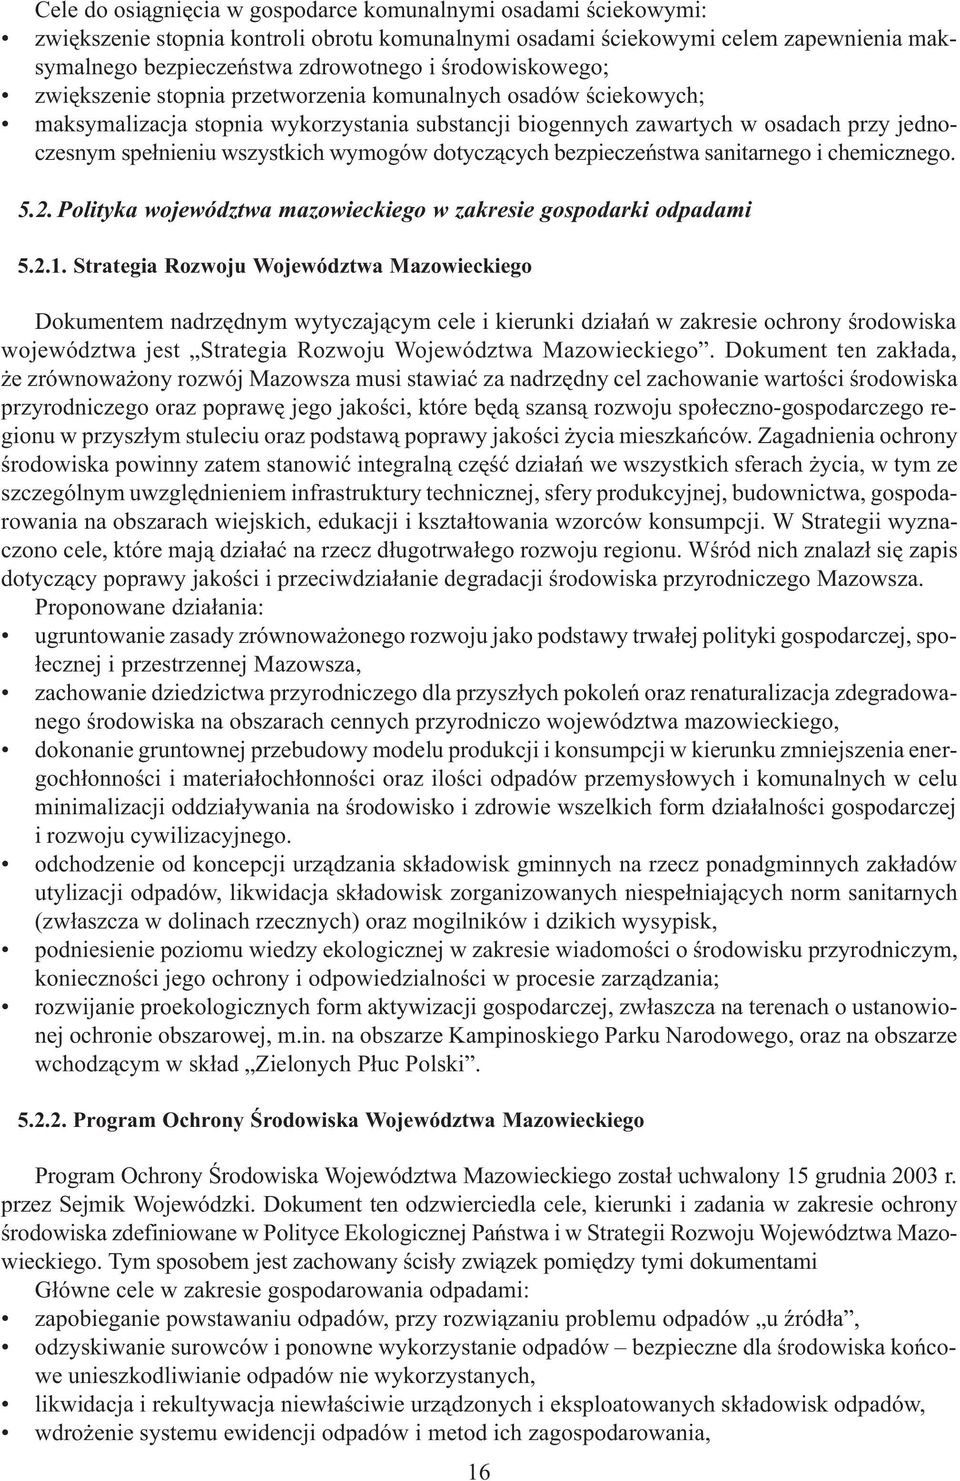 wymogów dotycz¹cych bezpieczeñstwa sanitarnego i chemicznego. 5.2. Polityka województwa mazowieckiego w zakresie gospodarki odpadami 5.2.1.